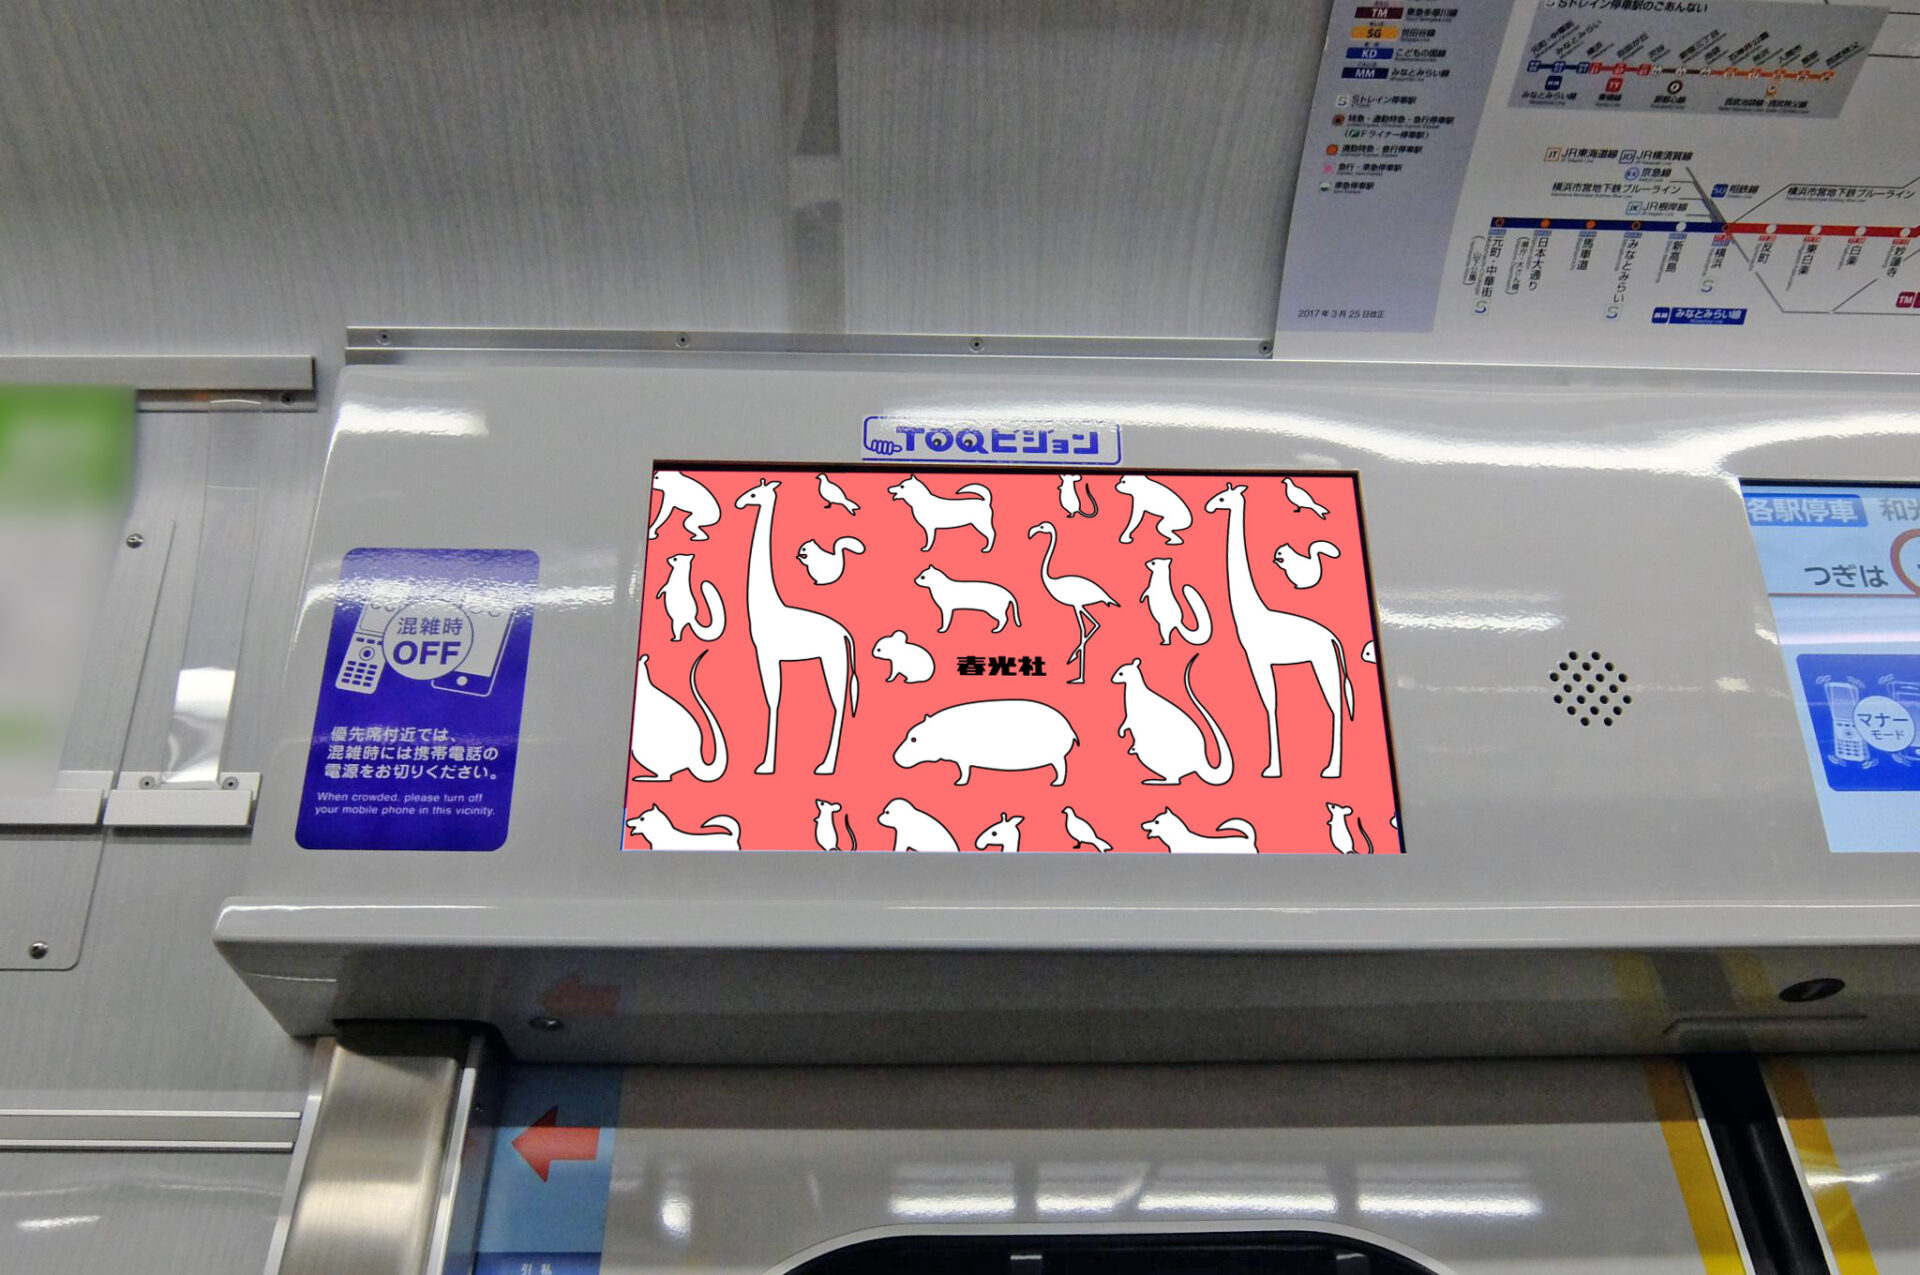 東急田園都市線車内ドア上部に設置されている横型デジタルサイネージ